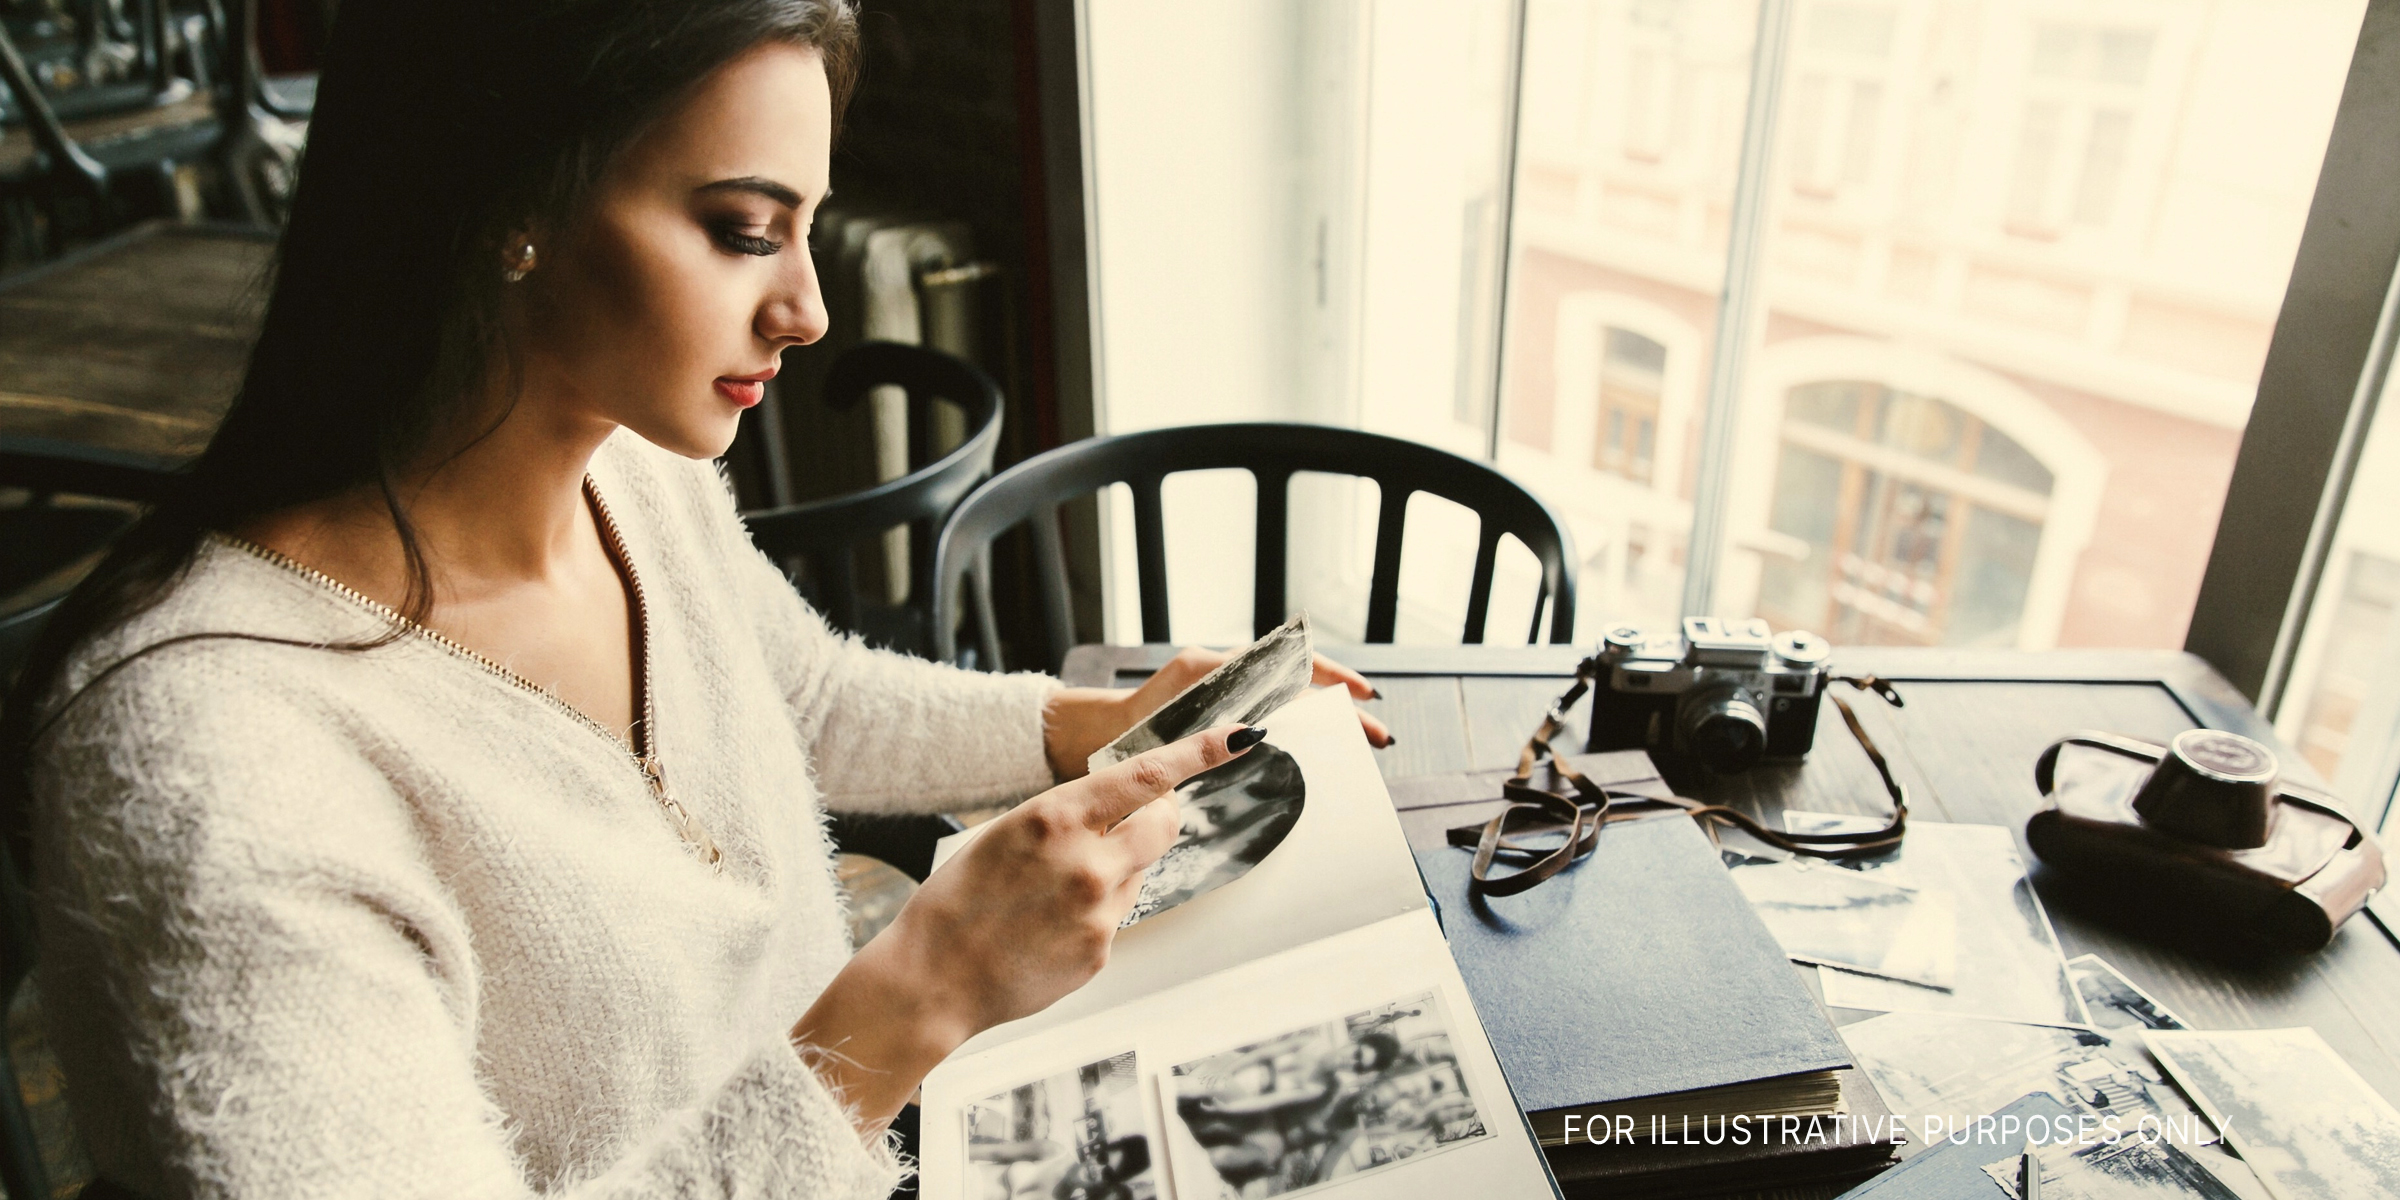 A woman looking through a scrapbook | Source: Shutterstock